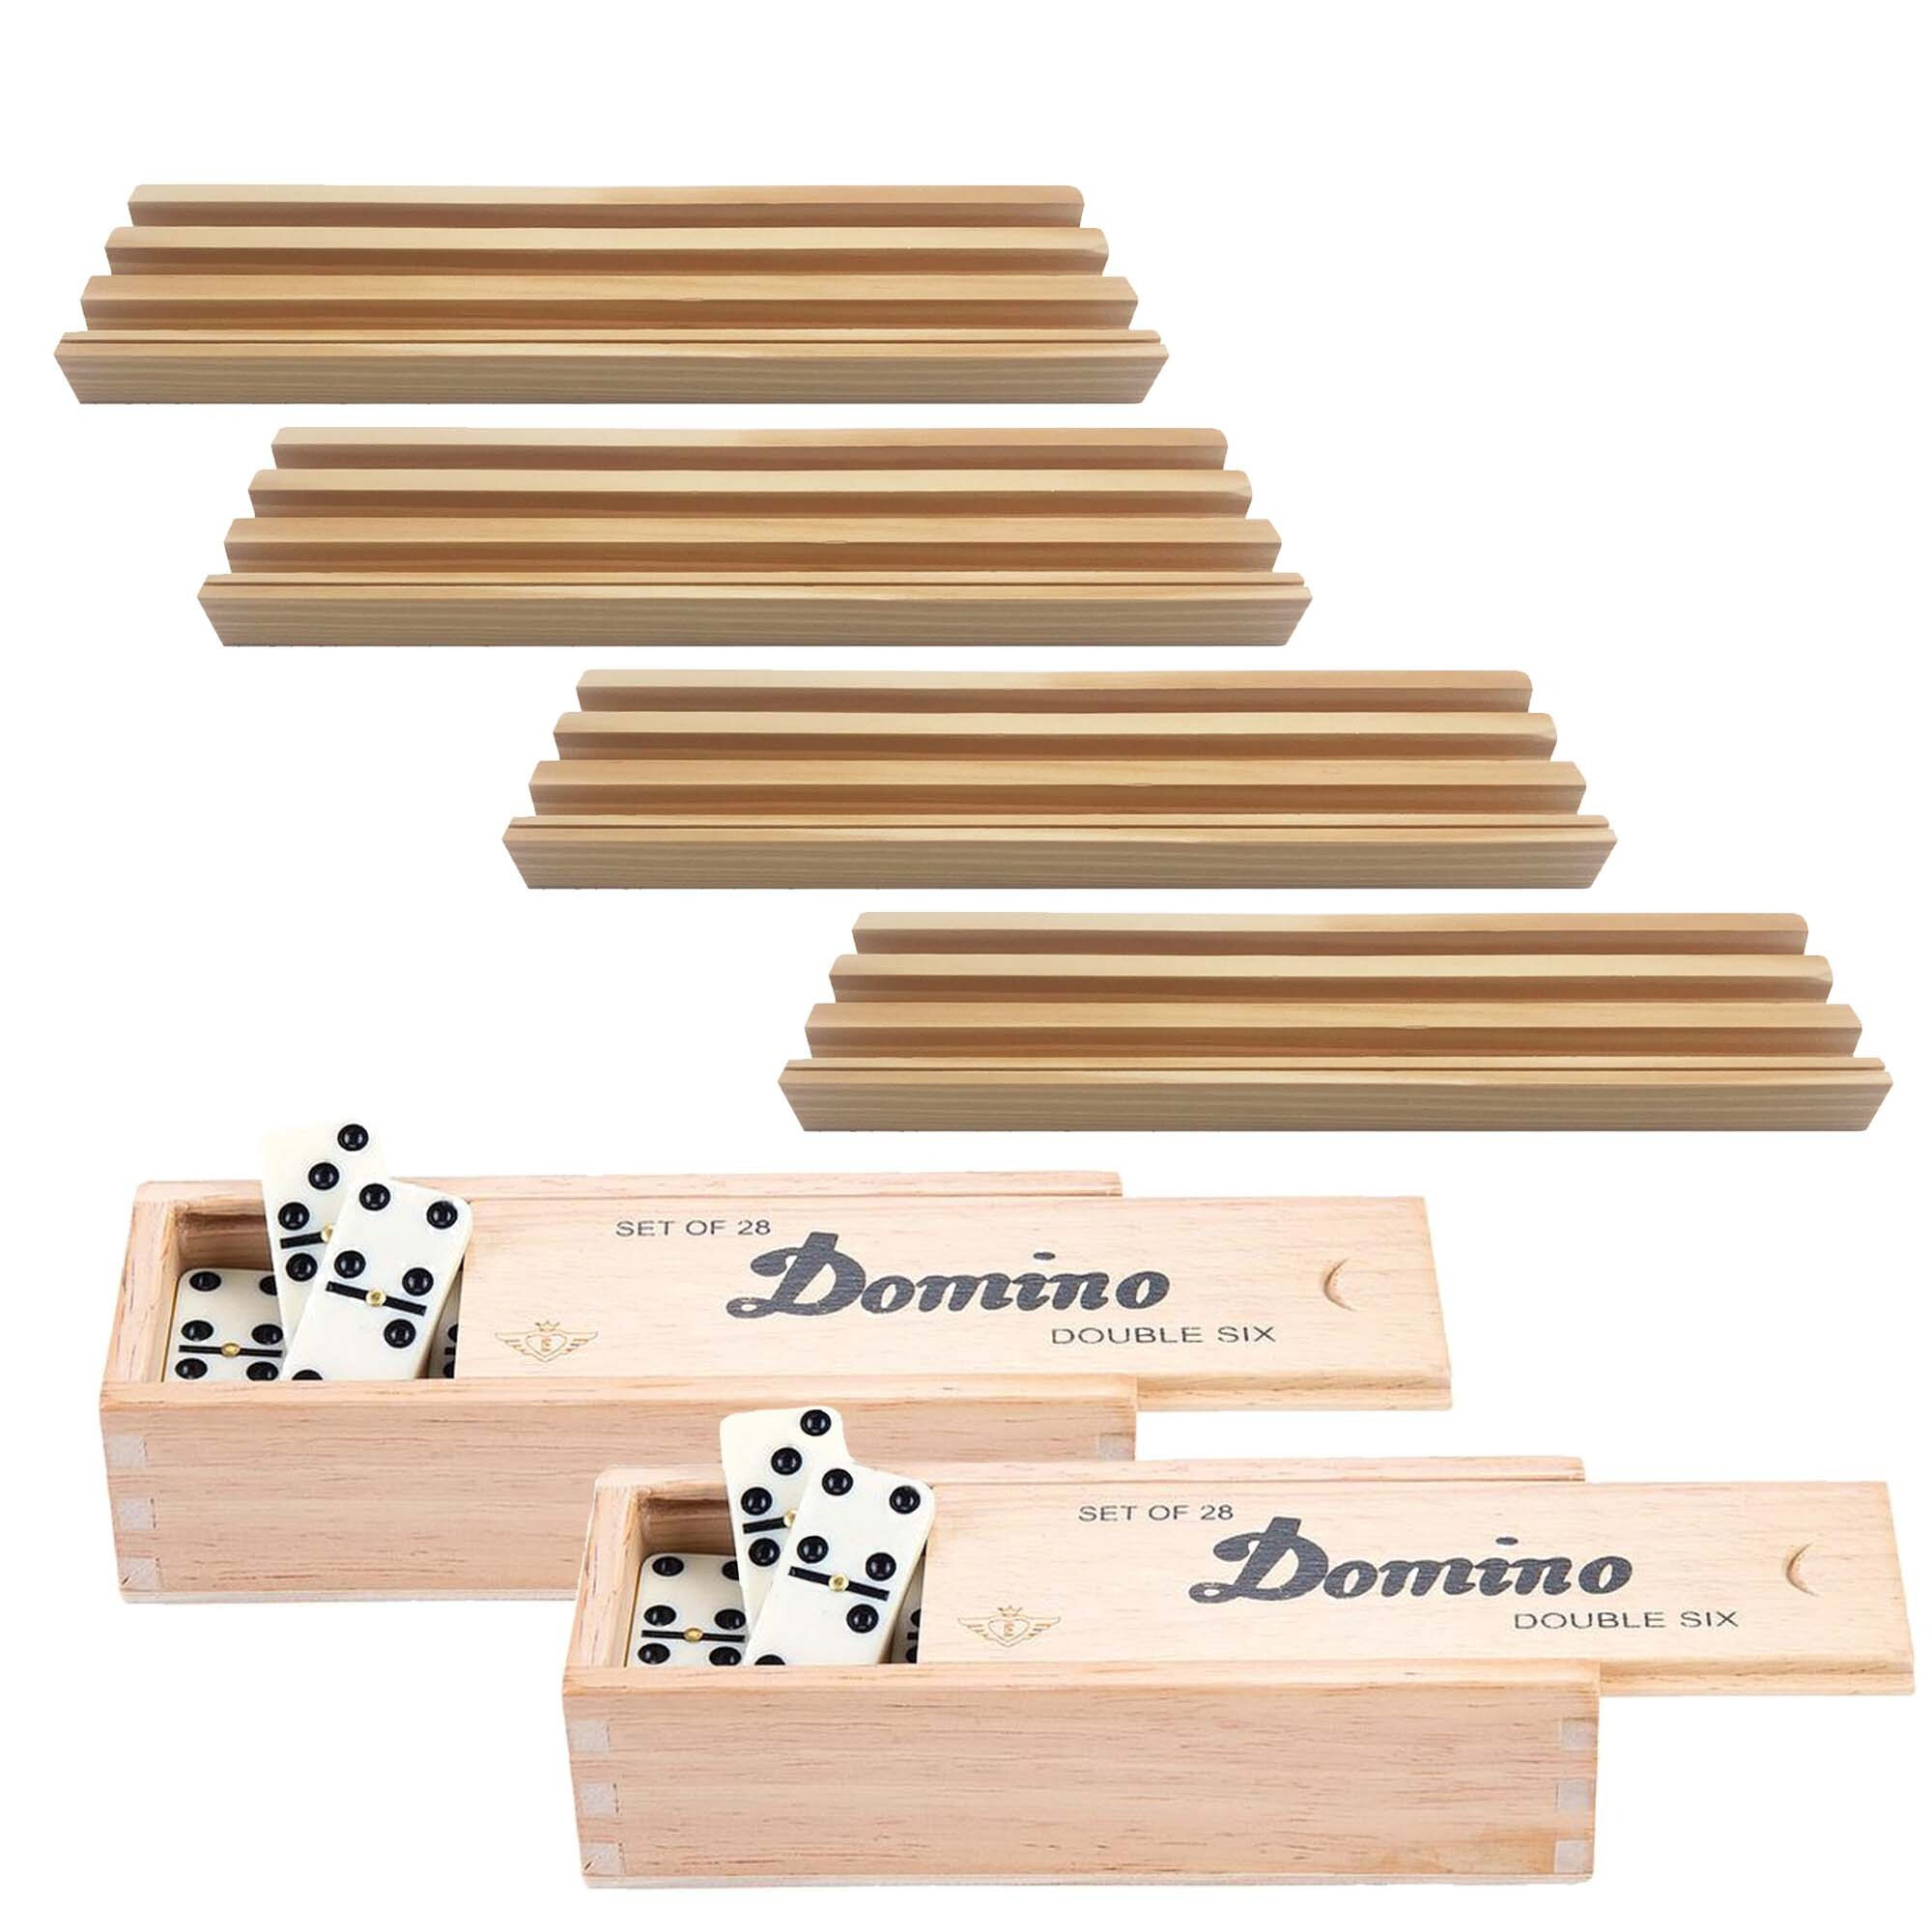 4x Dominostenenhouder met domino spel in houten doos 56x stenen - Kaarthouders - Standaarden